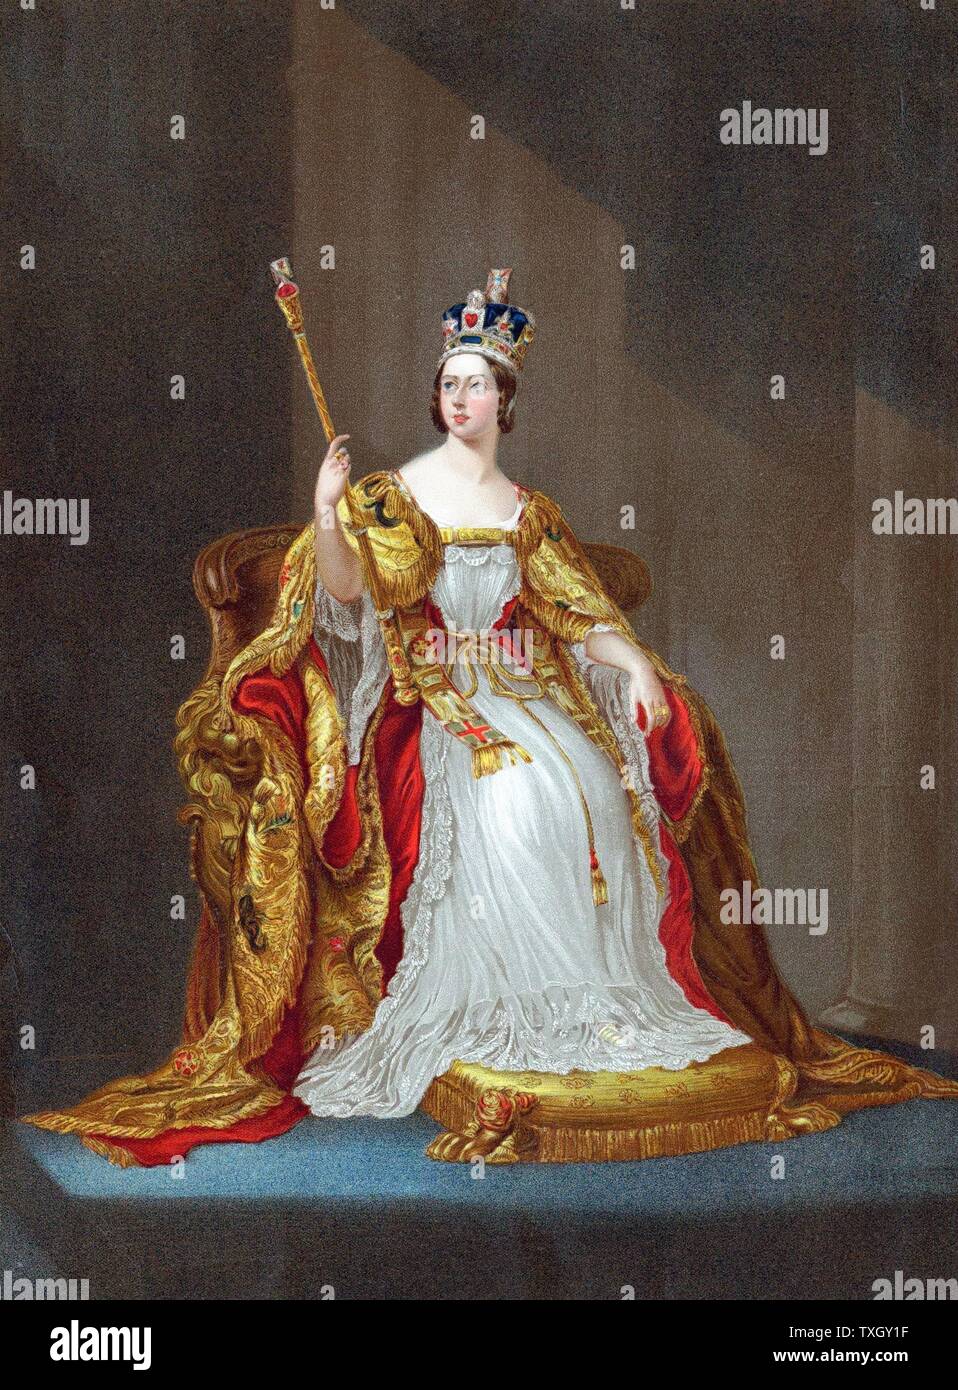 La reine Victoria (1819-1901) reine de France à partir de 1837, l'Impératrice de l'Inde de 1876, couronné en 1838. Victoria le trône à coronation robes portant couronne et sceptre holding Oleograph Banque D'Images